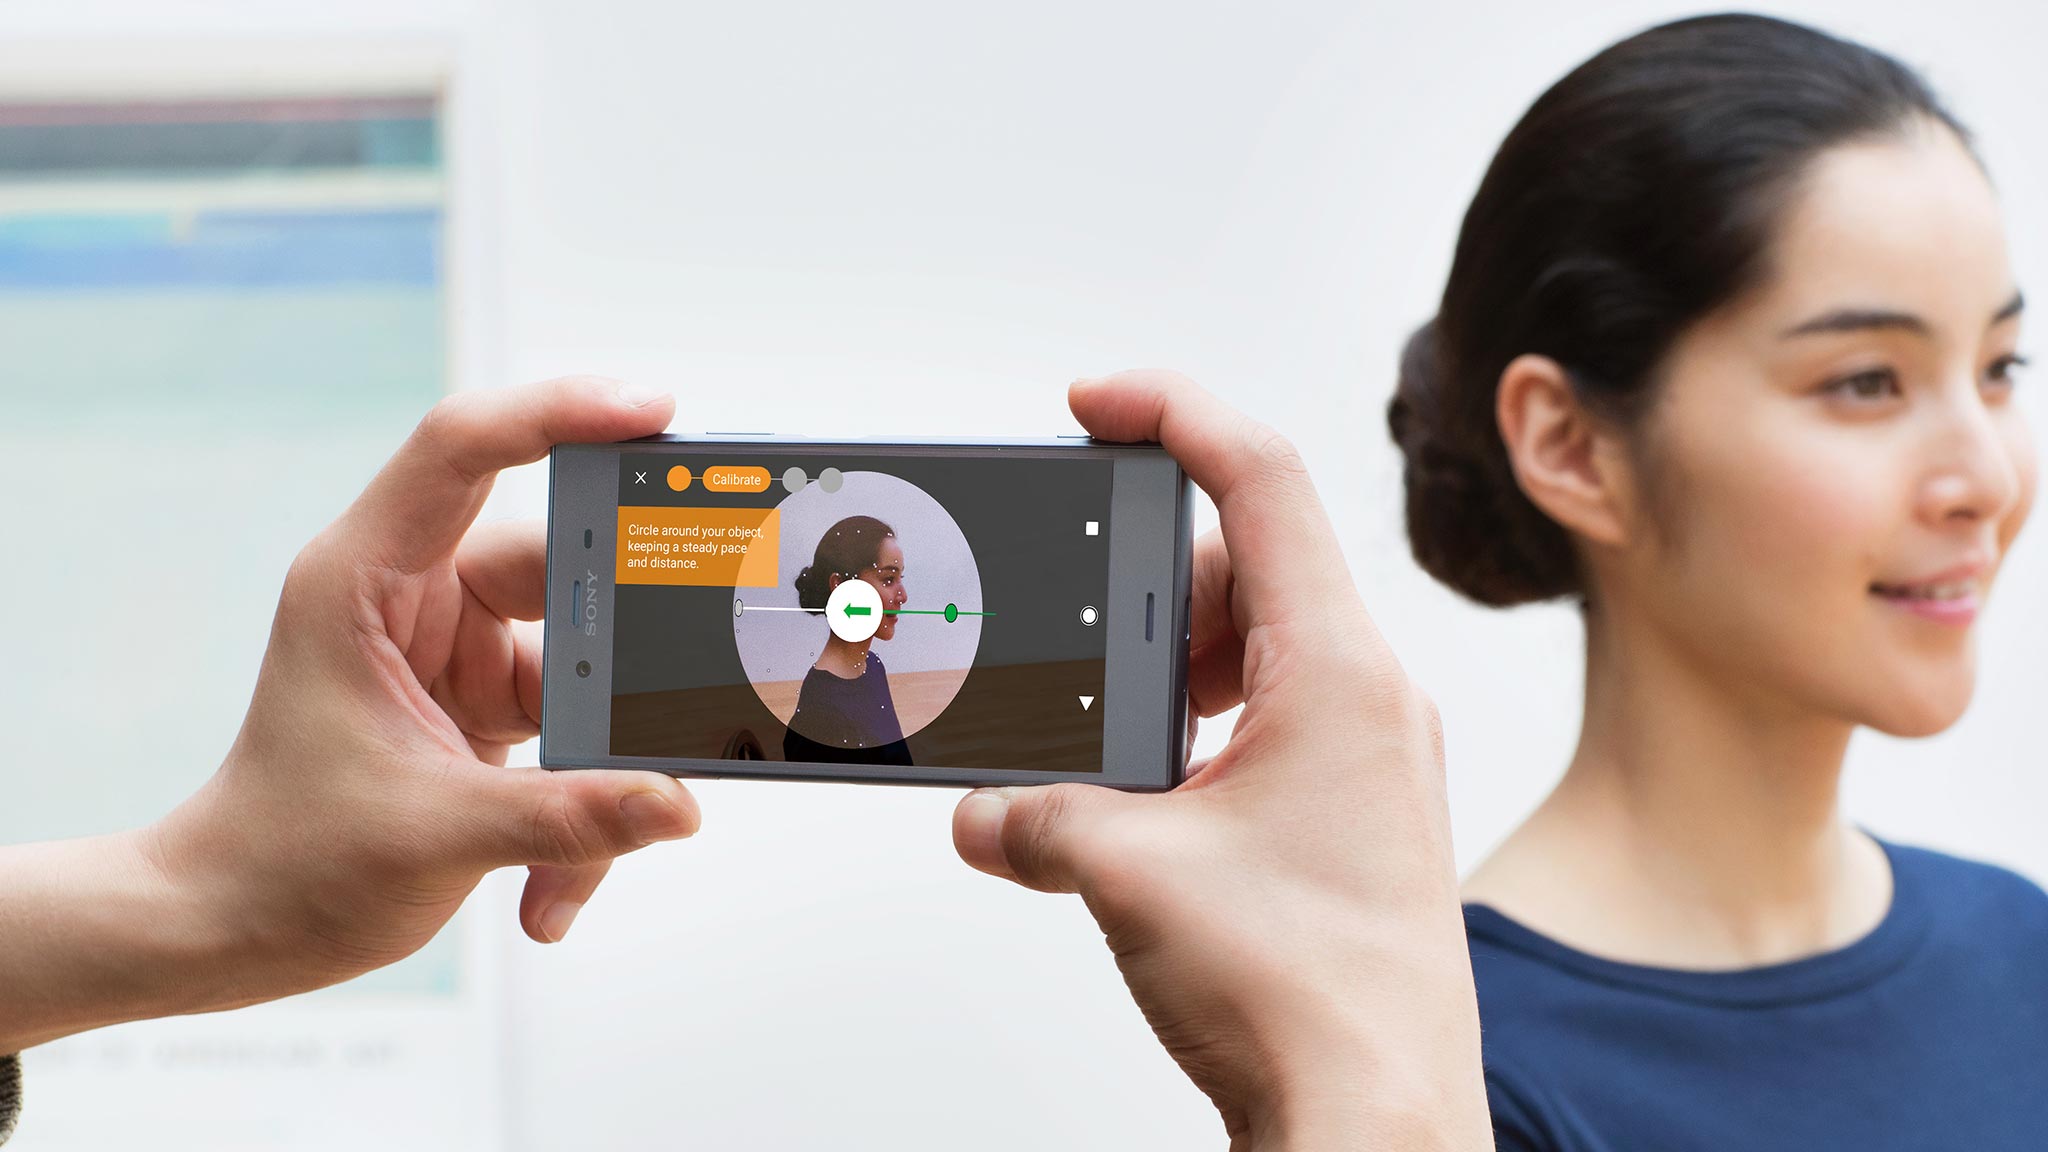 Sony Xperia XZ1 và XZ1 Compact: Snapdragon 835, ứng dụng tạo hình 3D, Android 8.0